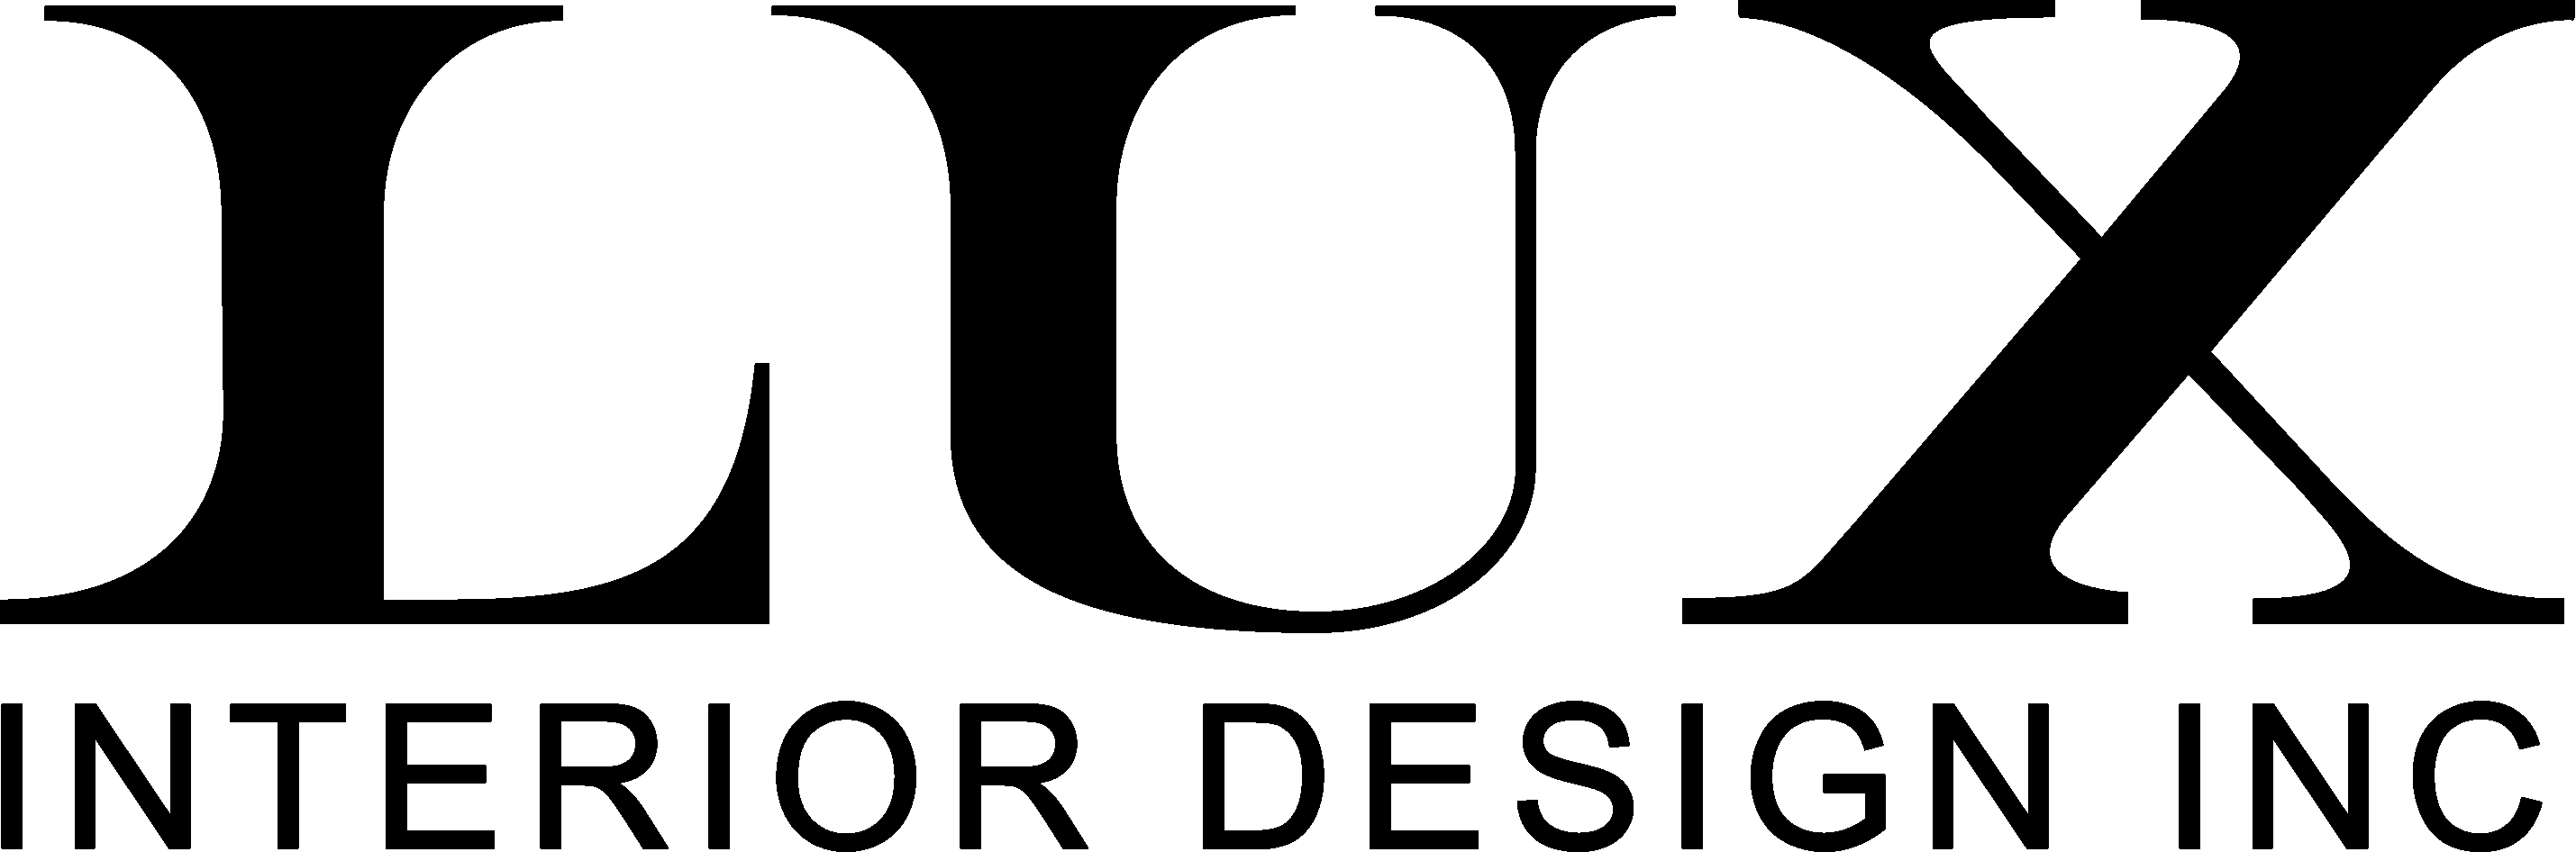 LUX Interior Design LLC Logo